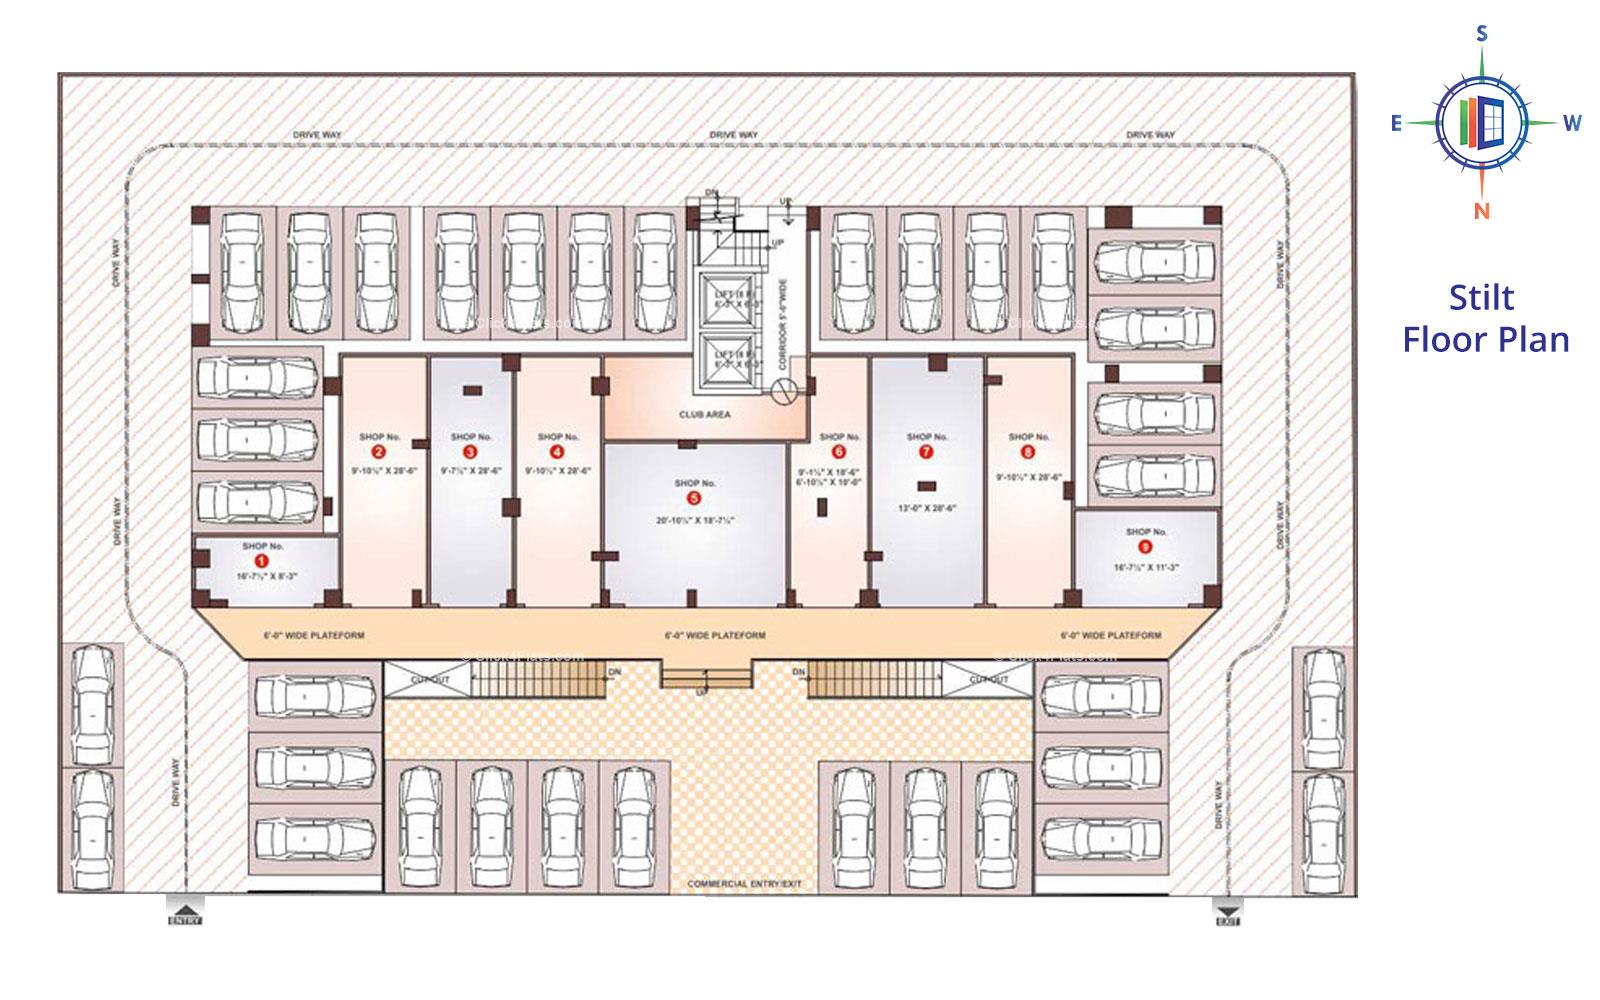 Shivgyan Residency Stilt Floor Plan